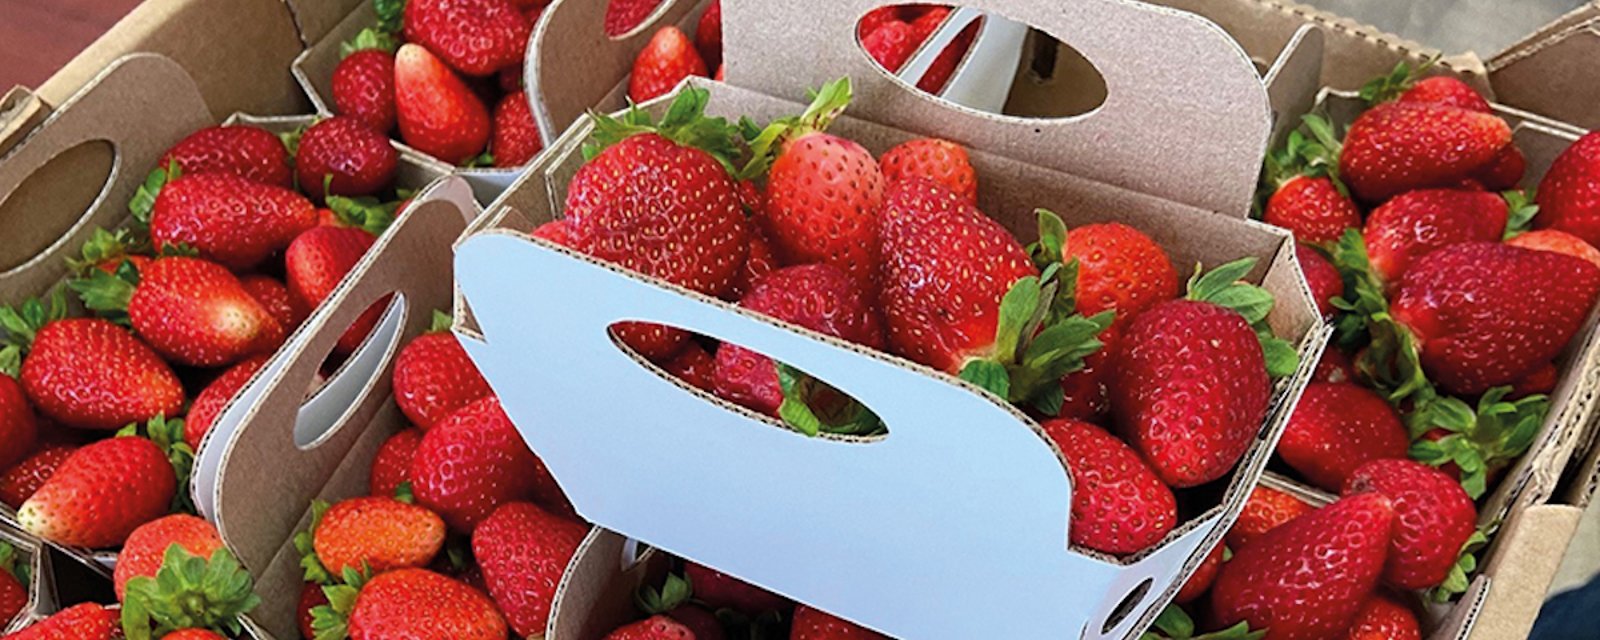 Le nouveau format des contenants de fraises du Québec risque de ne pas plaire à tout le monde